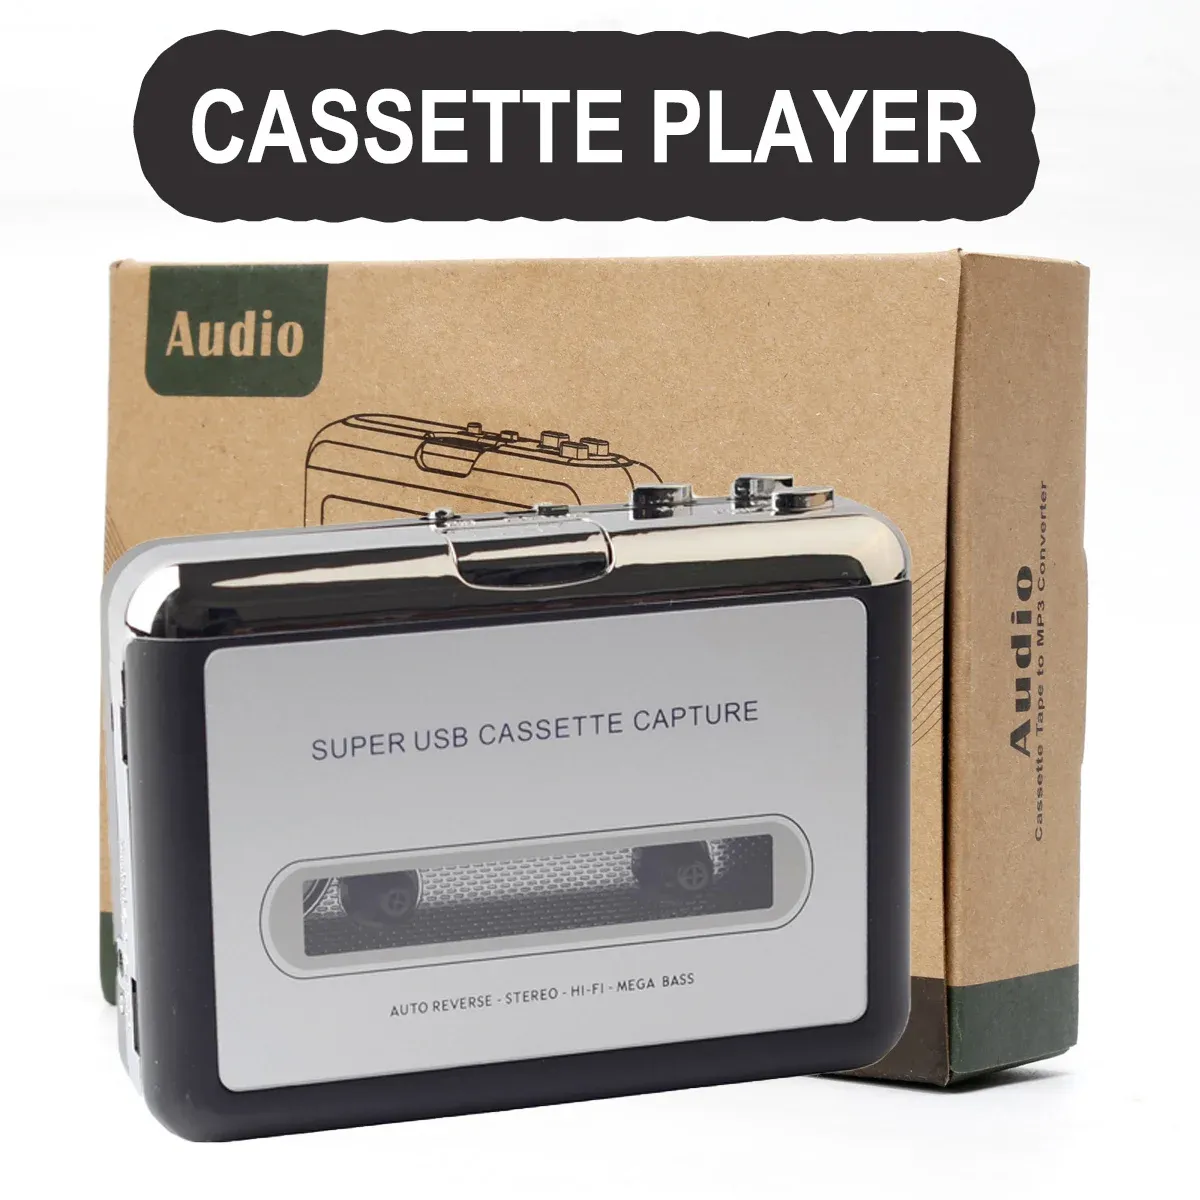 Players Cassette à plusieurs usage Lecteur MP3 / CD Audio Auto Auto Inverse USB Cassette Tape lecteur Construit In Mic Cassette Mp3 Converter Walkman